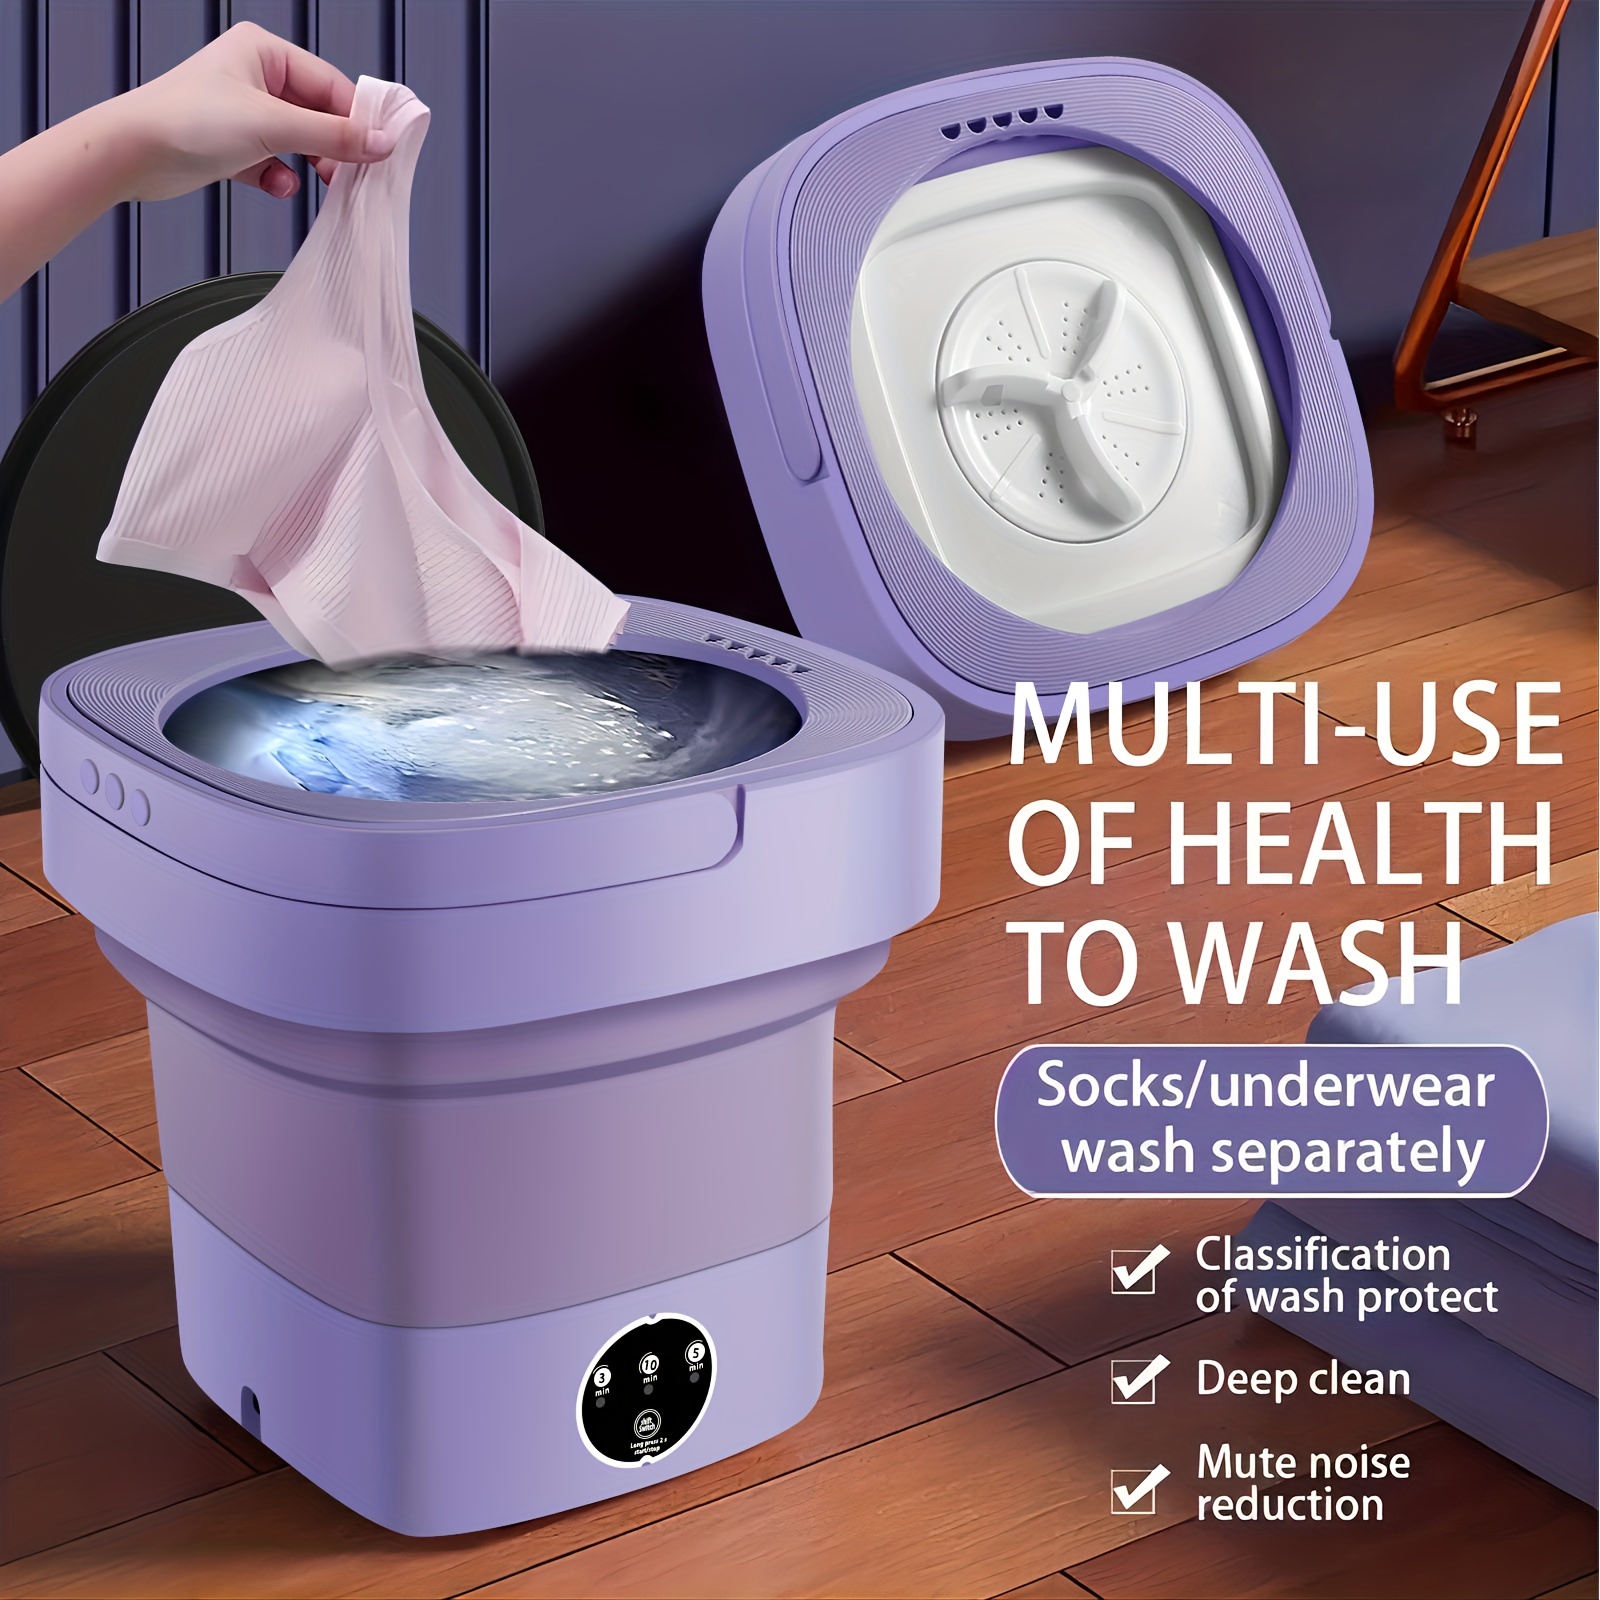  Mini lavadora portátil, lavadora de cubo plegable de 6 litros  con cesta de drenaje, lavadora plegable para calcetines y ropa interior  (rosa) : Electrodomésticos